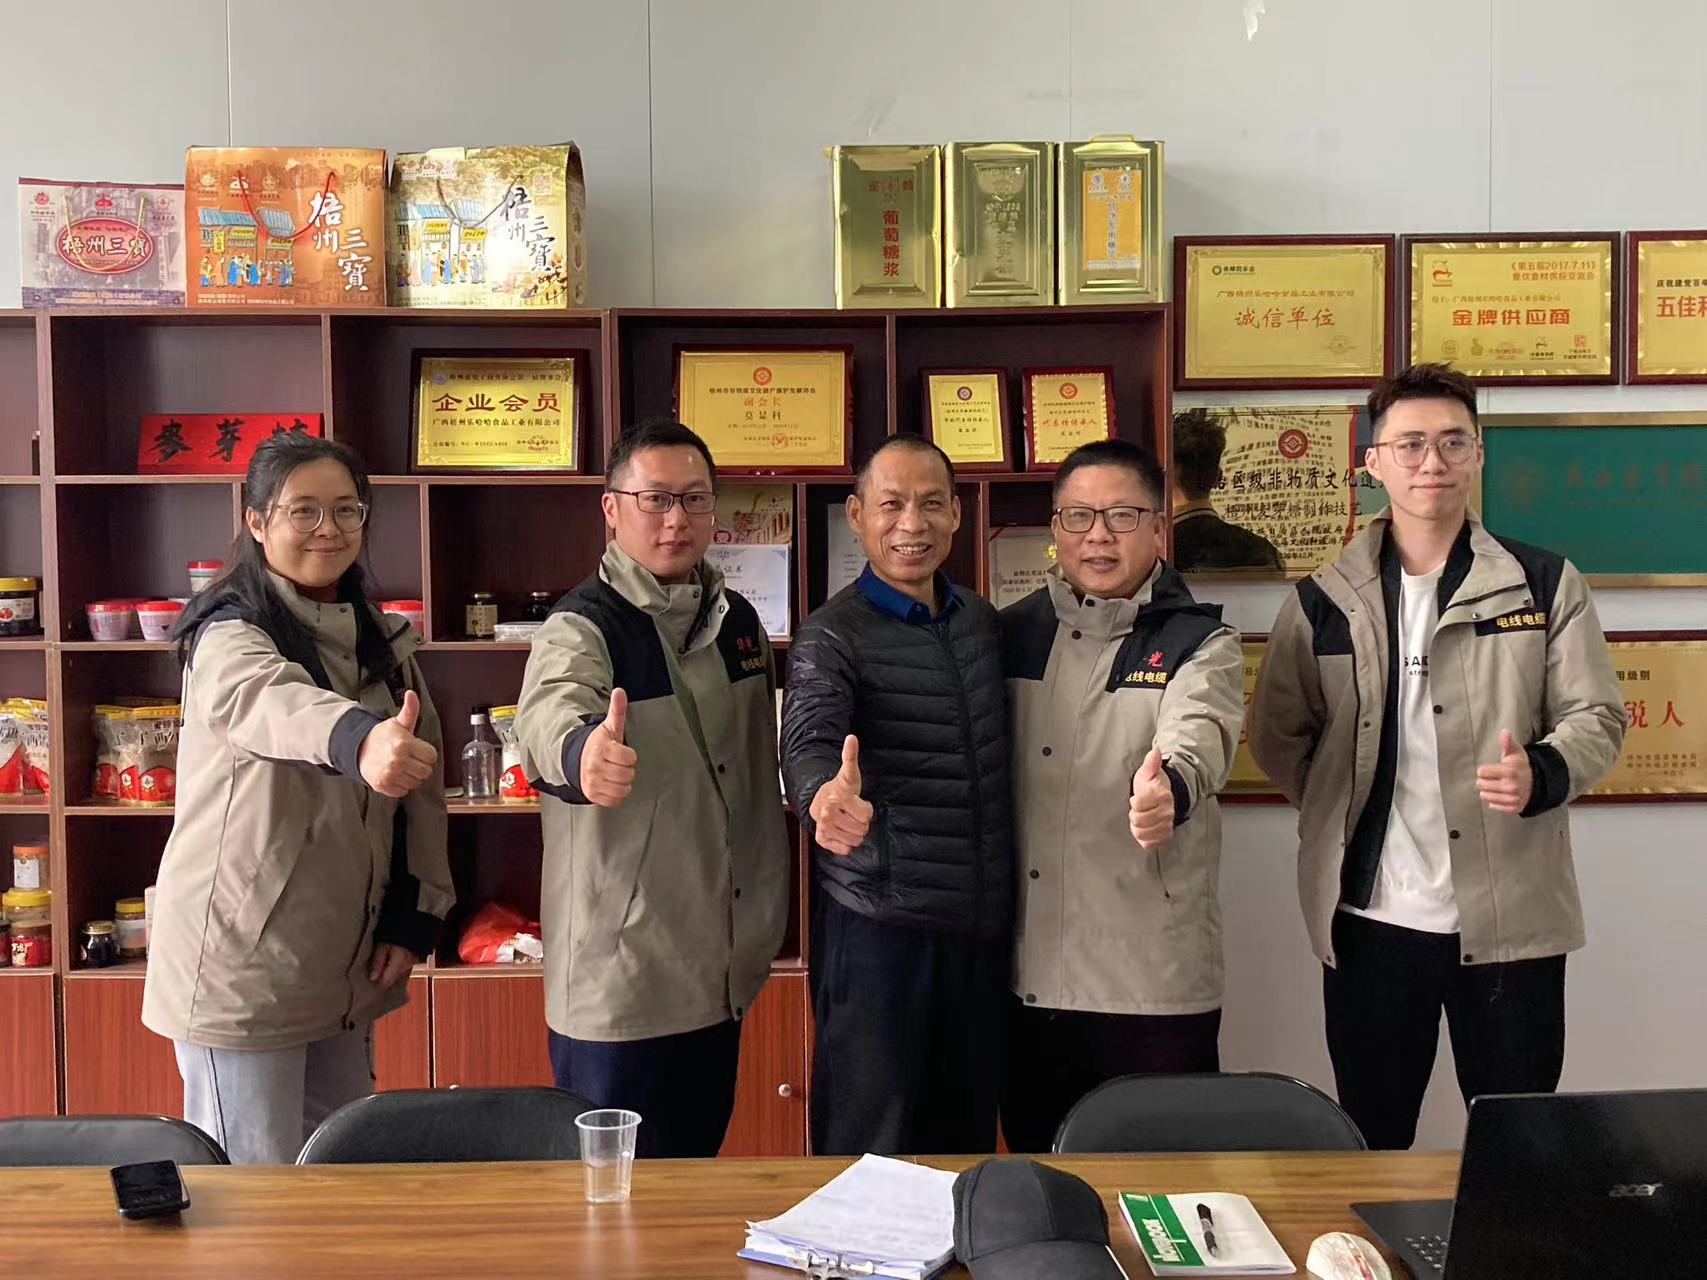 华光电缆团队光临乐哈哈公司！总经理莫显科分享蜜蜂牌麦芽糖经验！